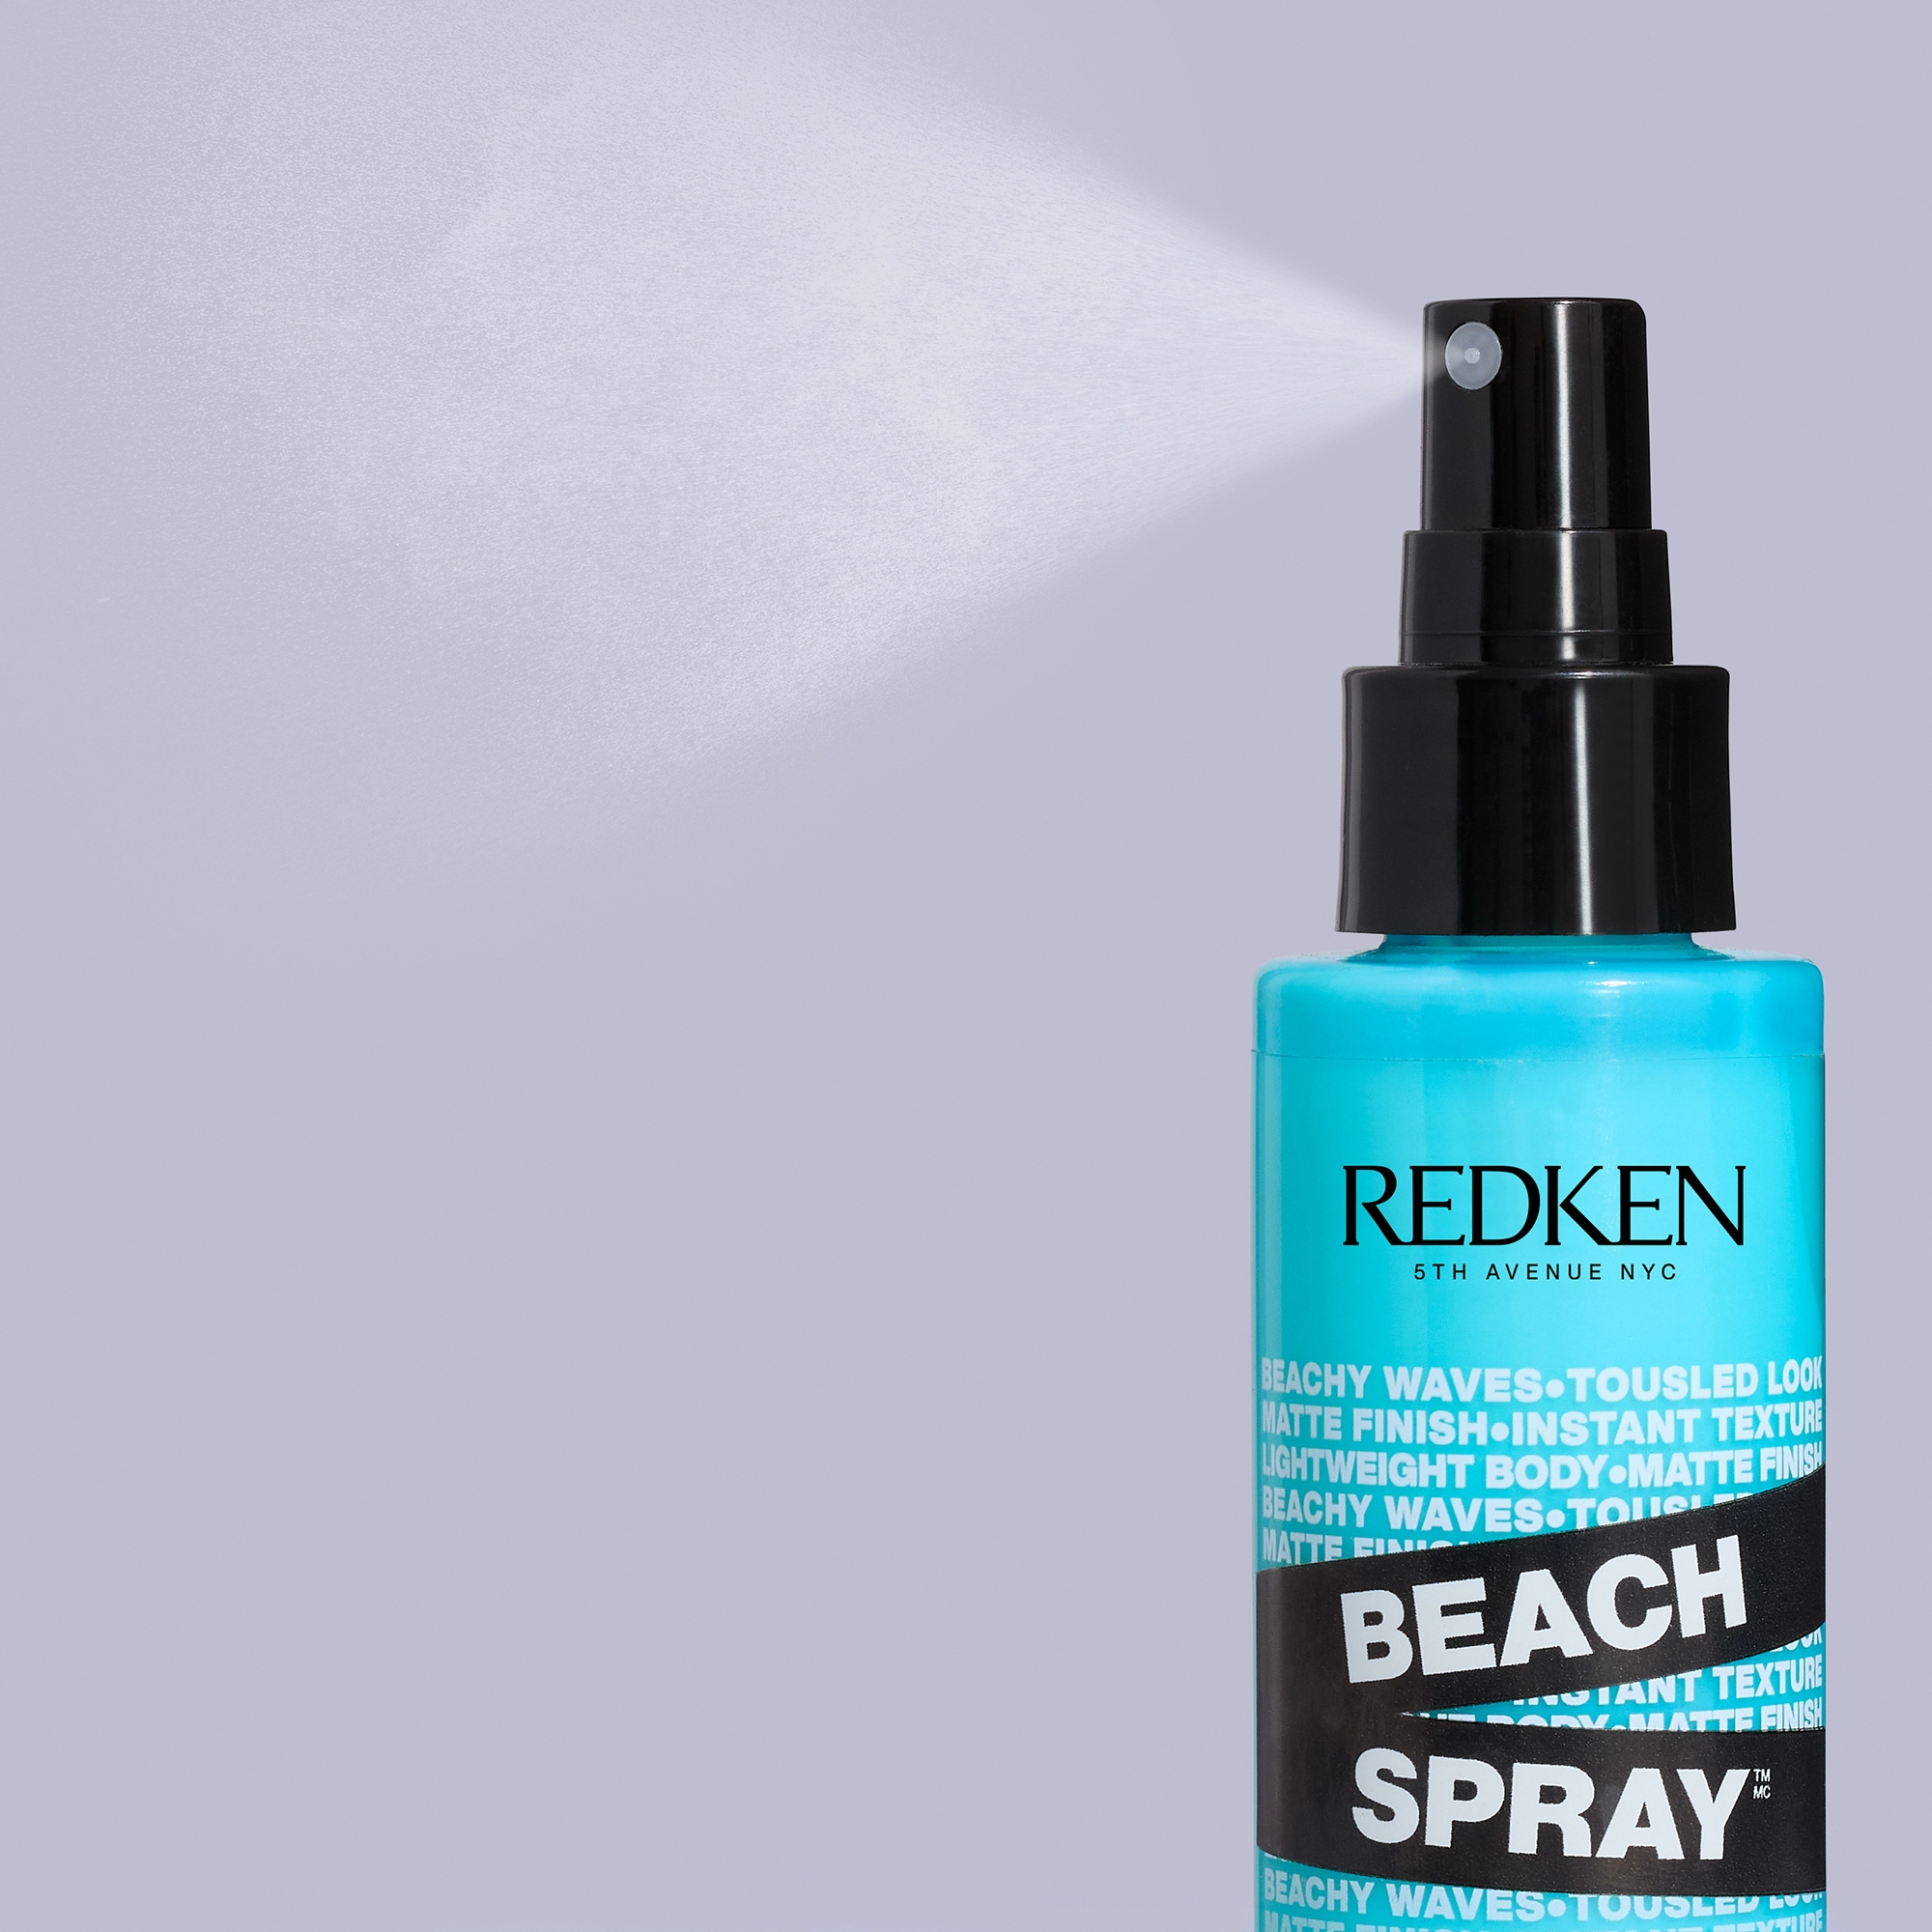 Redken-2022-NA-Beach-Spray-Ecom-ATF-Spray-Texture-No-Copy-2000×2000